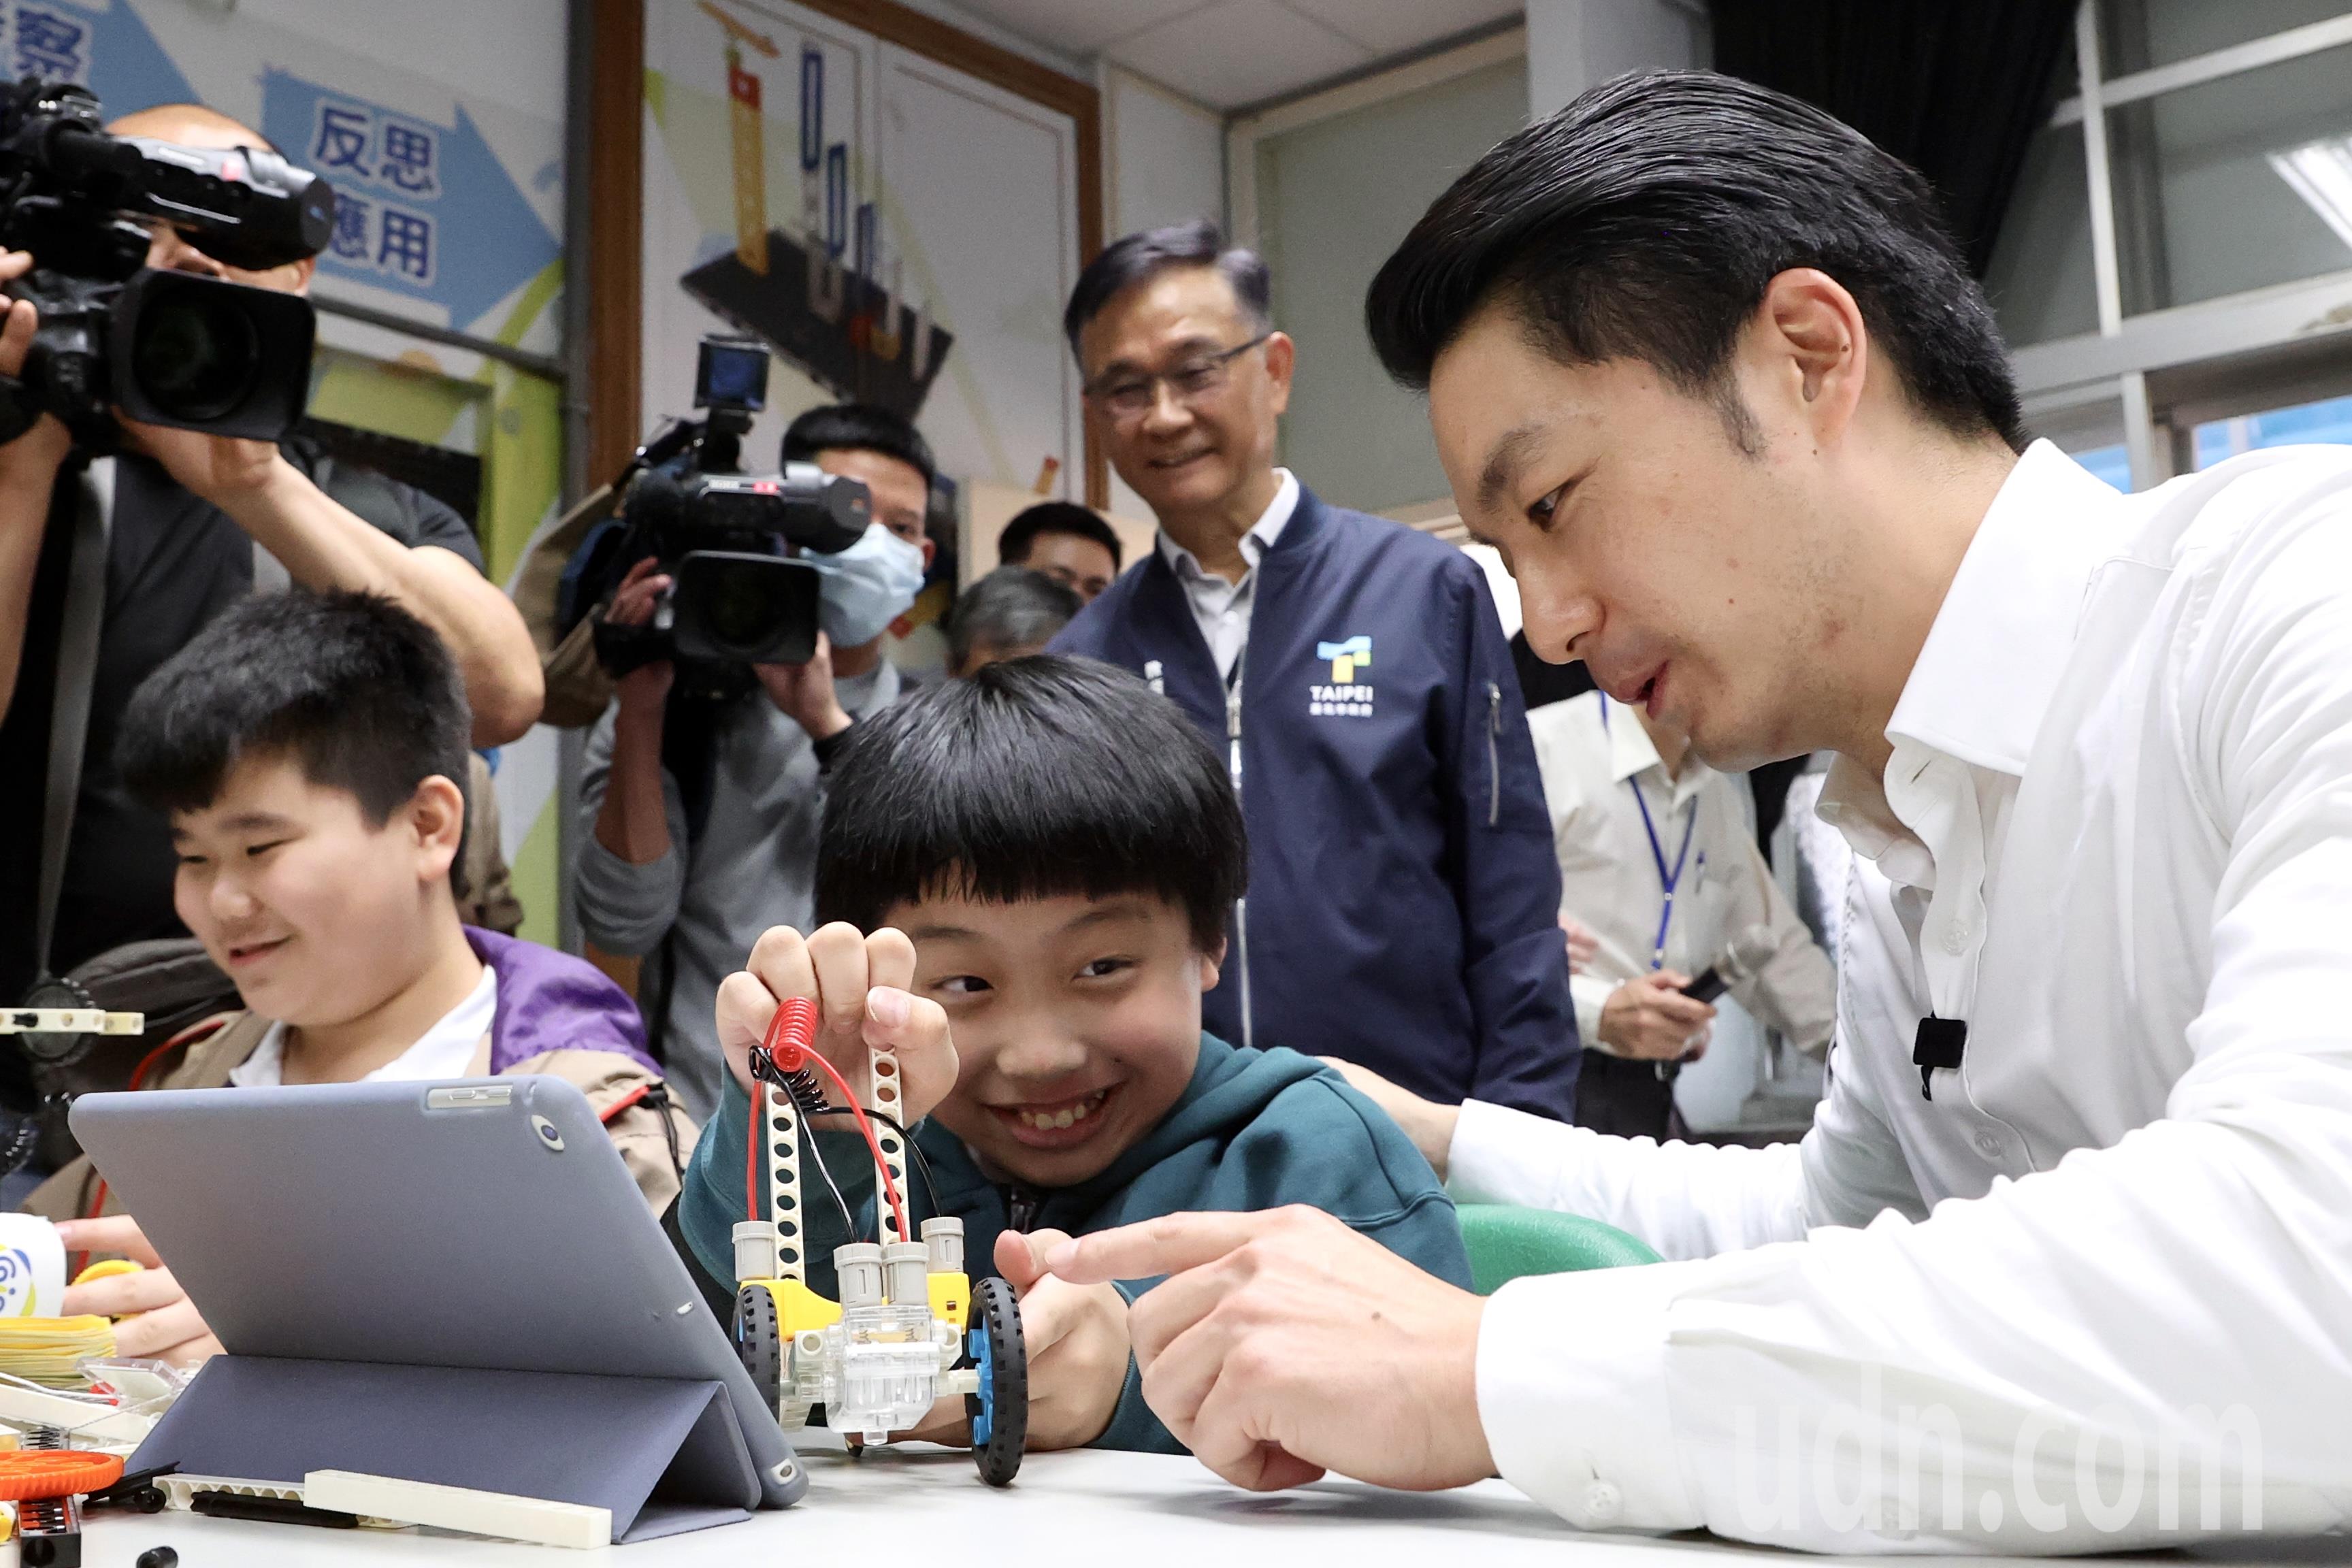 台北市长蒋万安（右）下午出席明湖国小儿童月翻转上下课活动，与学童互动。记者林伯东／摄影